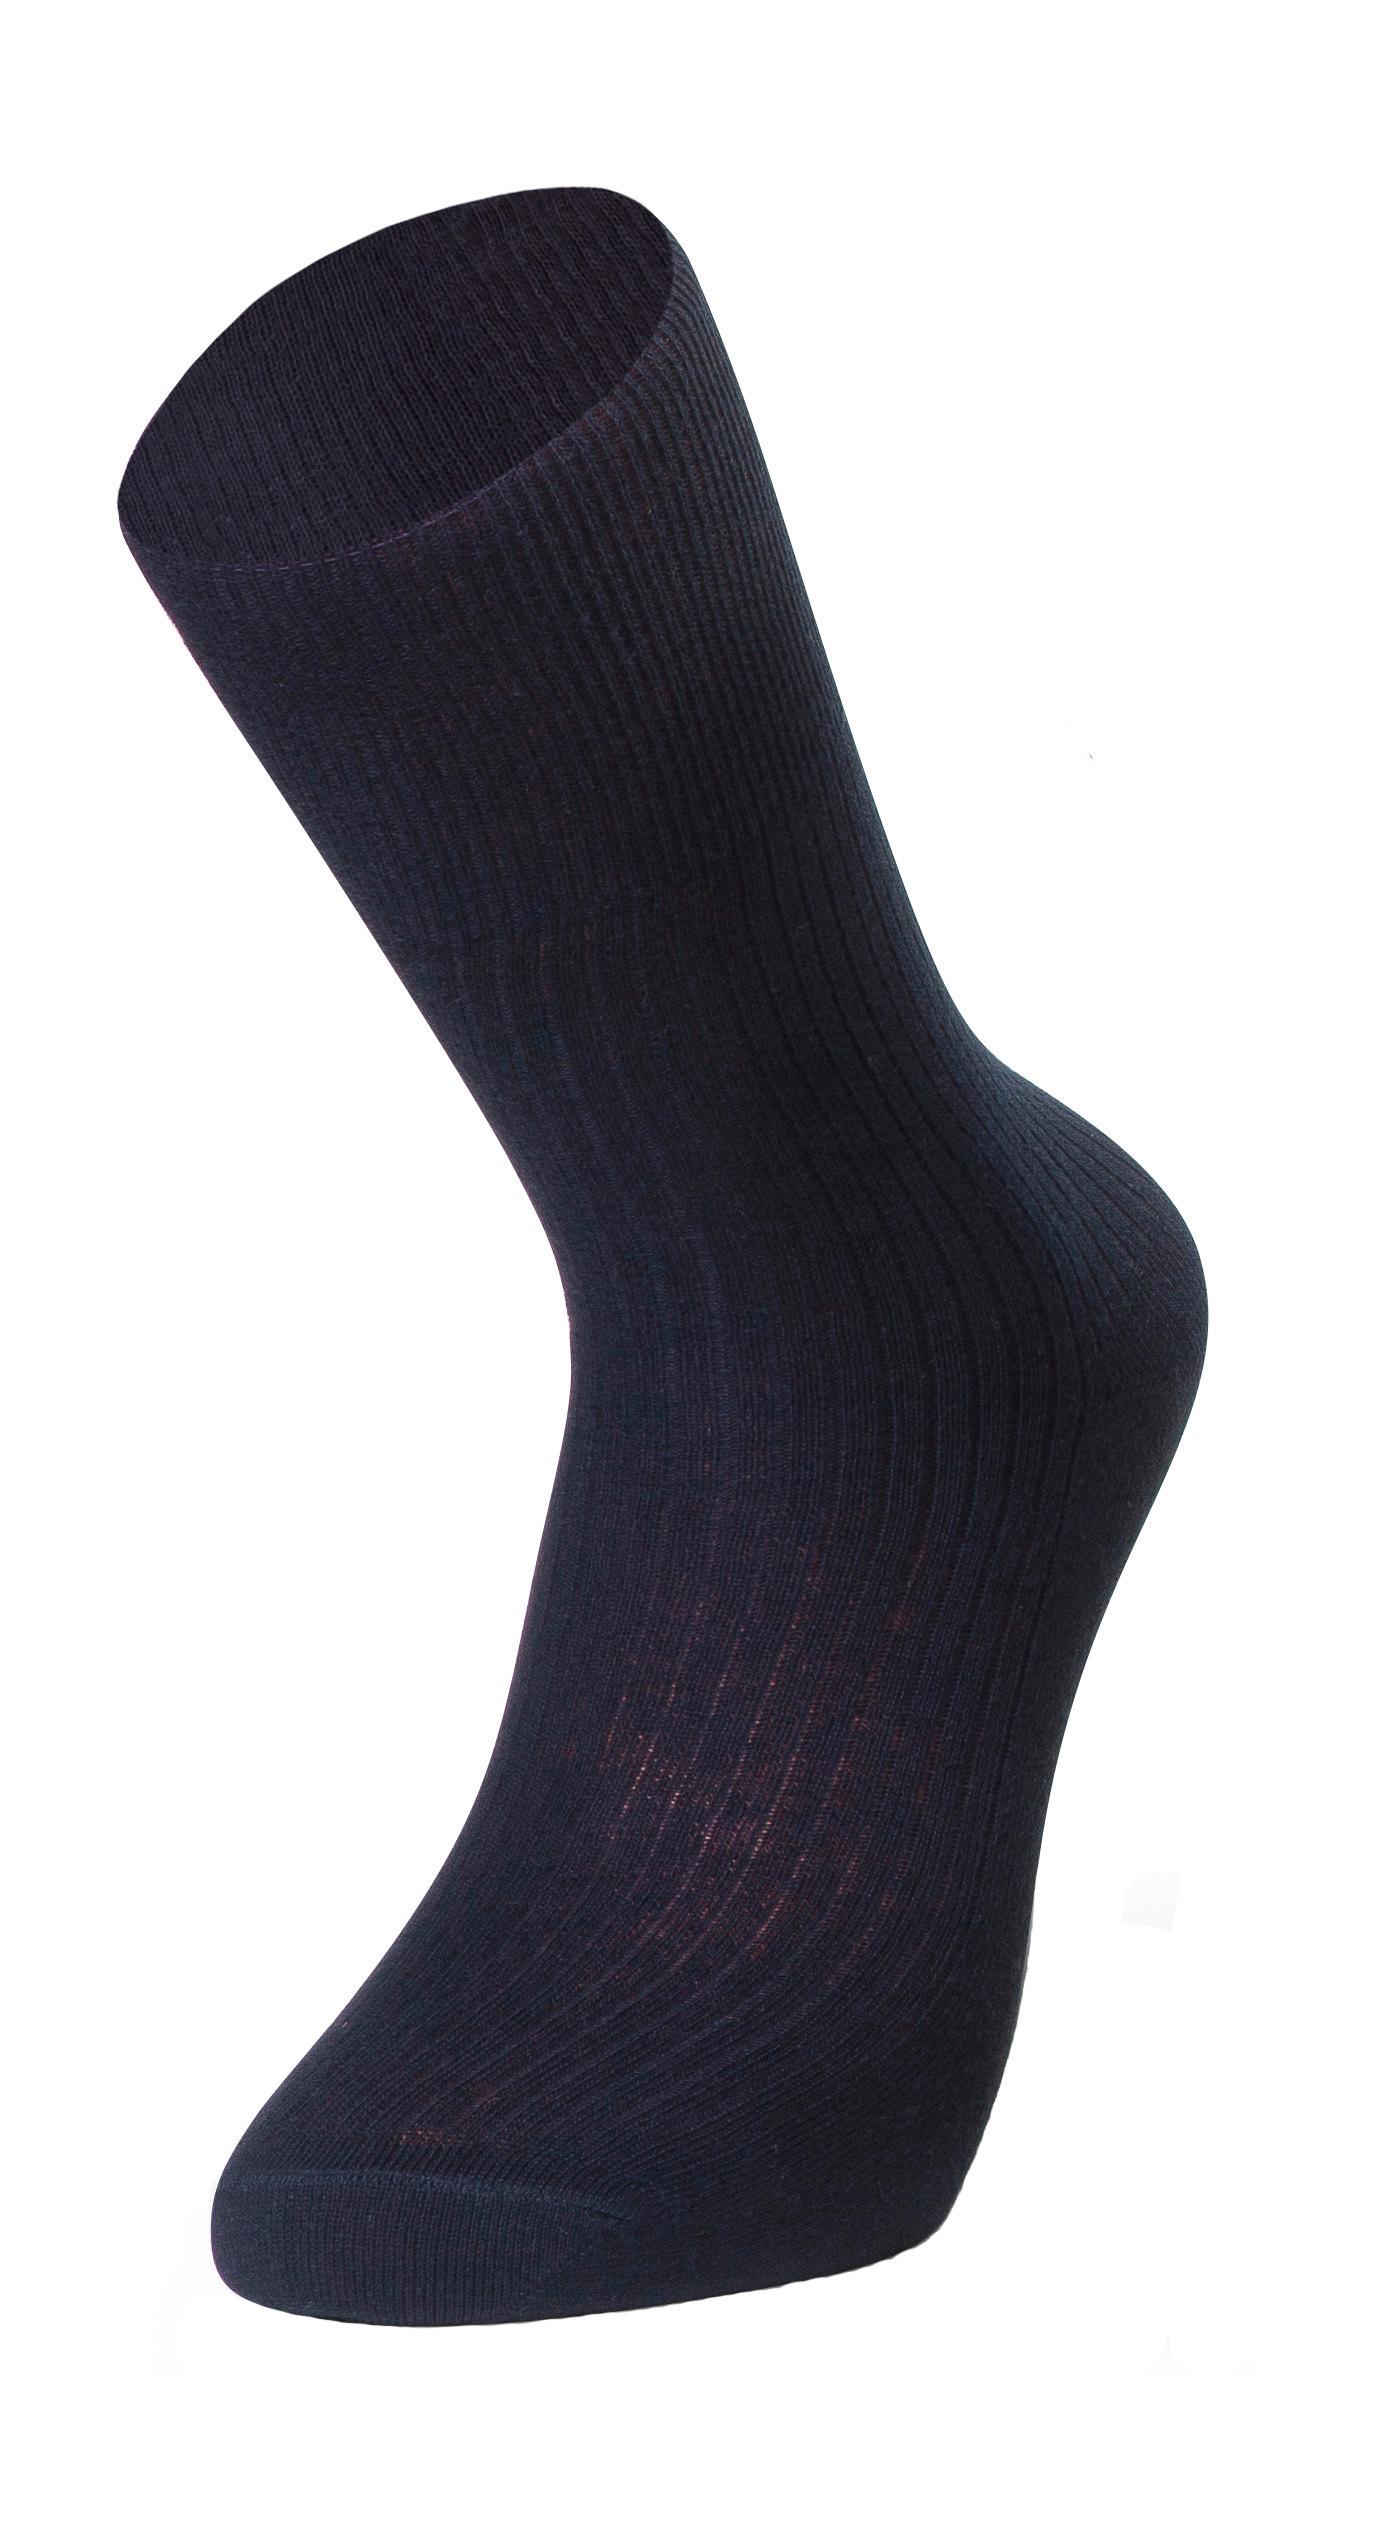 Selected image for SOCKS BMD Muške čarape art. 203 teget